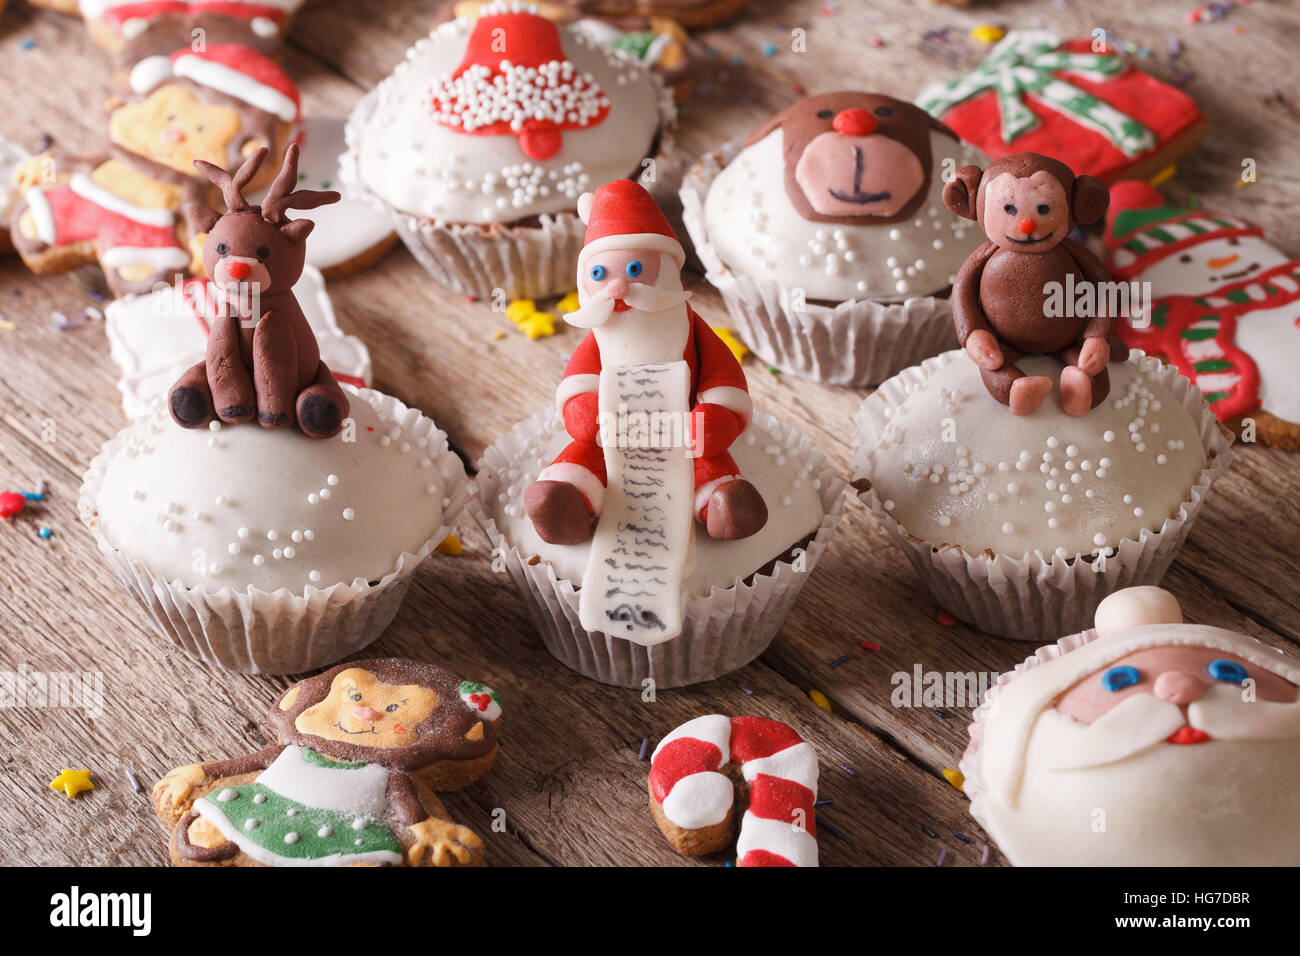 Dolci Di Natale Belli.Belli I Dolci Di Natale Tortine E Gingerbread Close Up Su Di Un Tavolo Di Legno Posizione Orizzontale Foto Stock Alamy